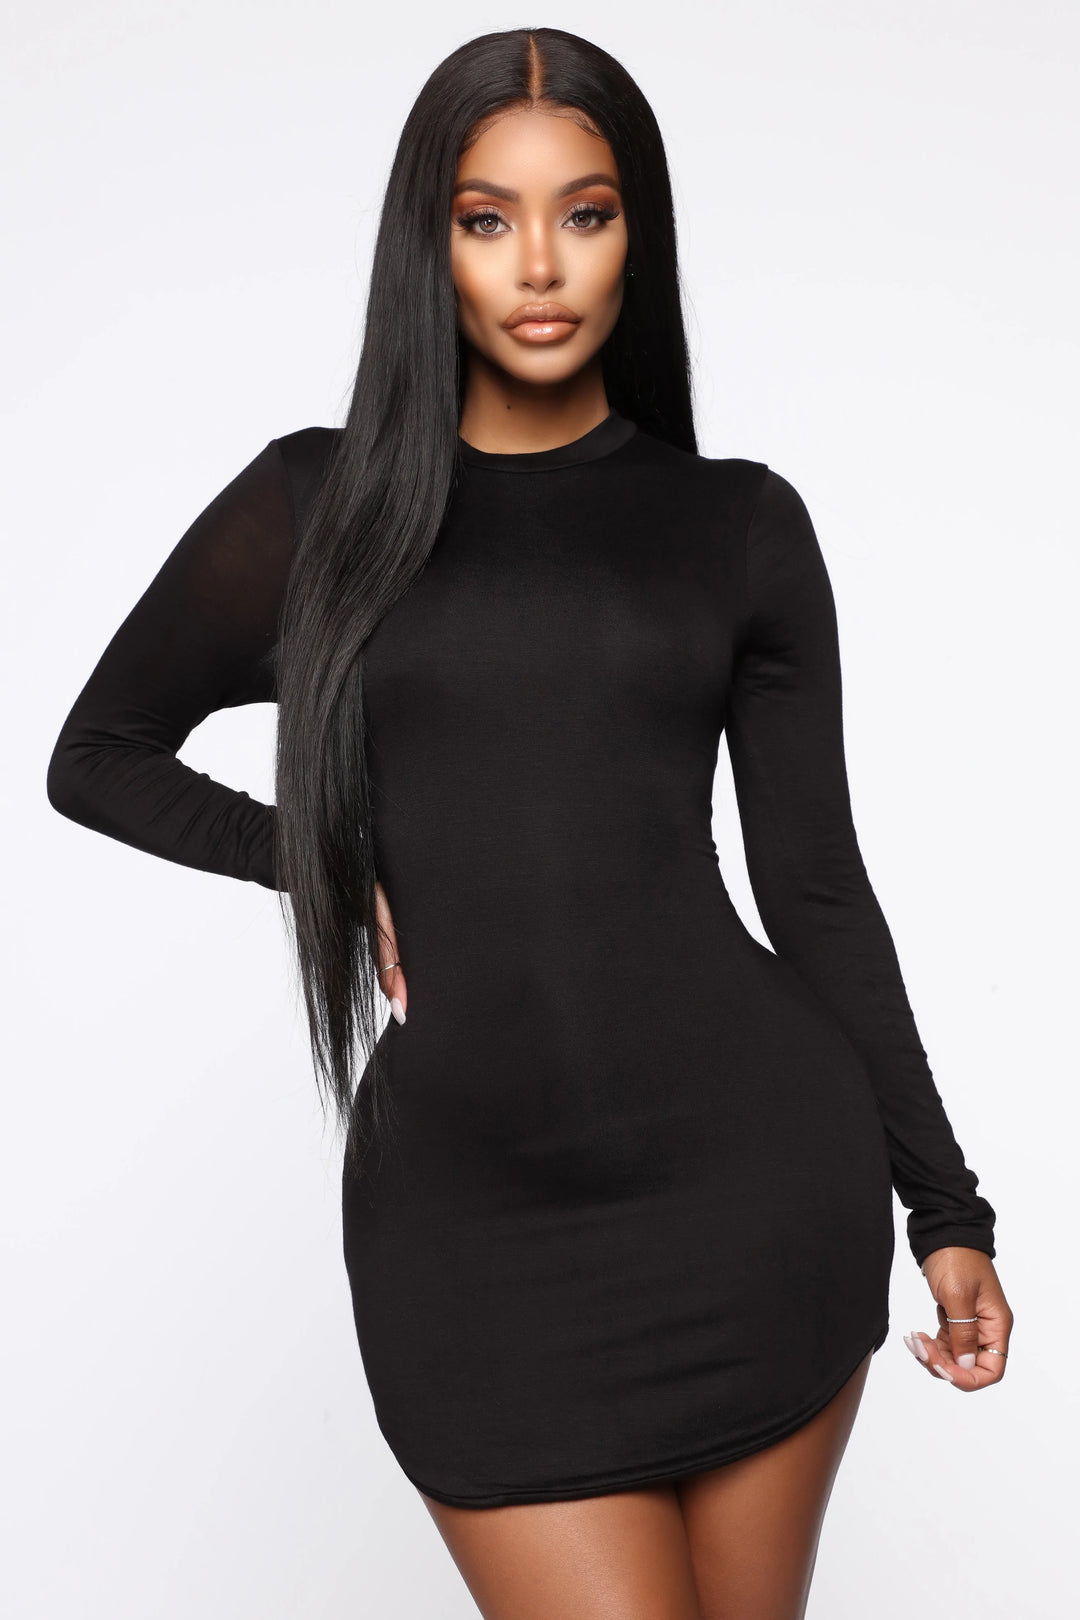 Kylie jenner inspired black dress with full sleeves